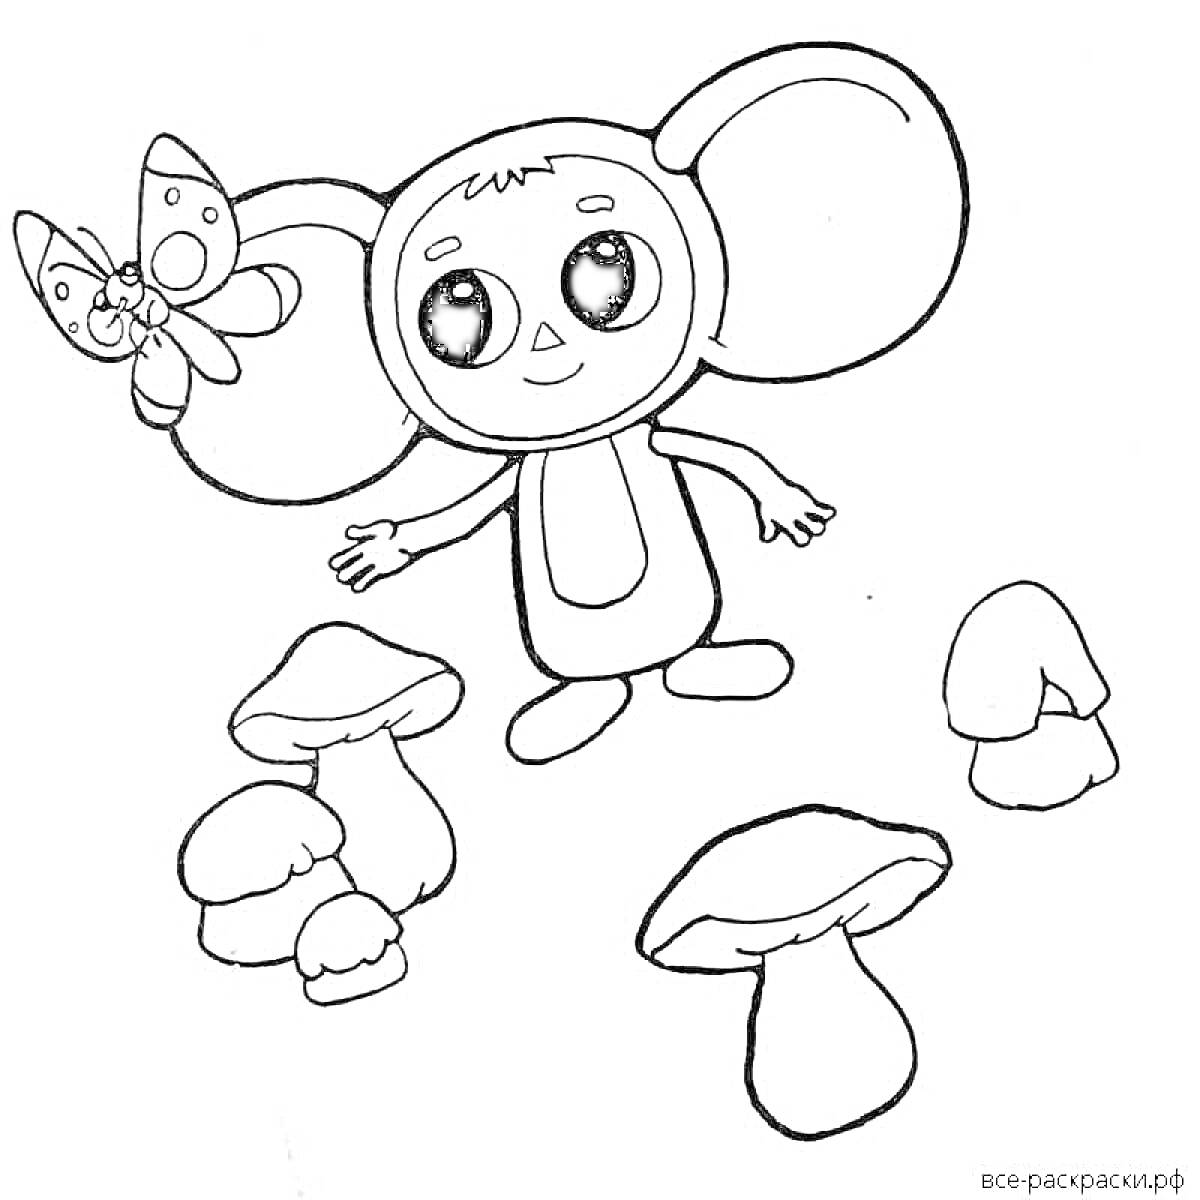 Раскраска Чебурашка с бабочкой на голове и грибами вокруг